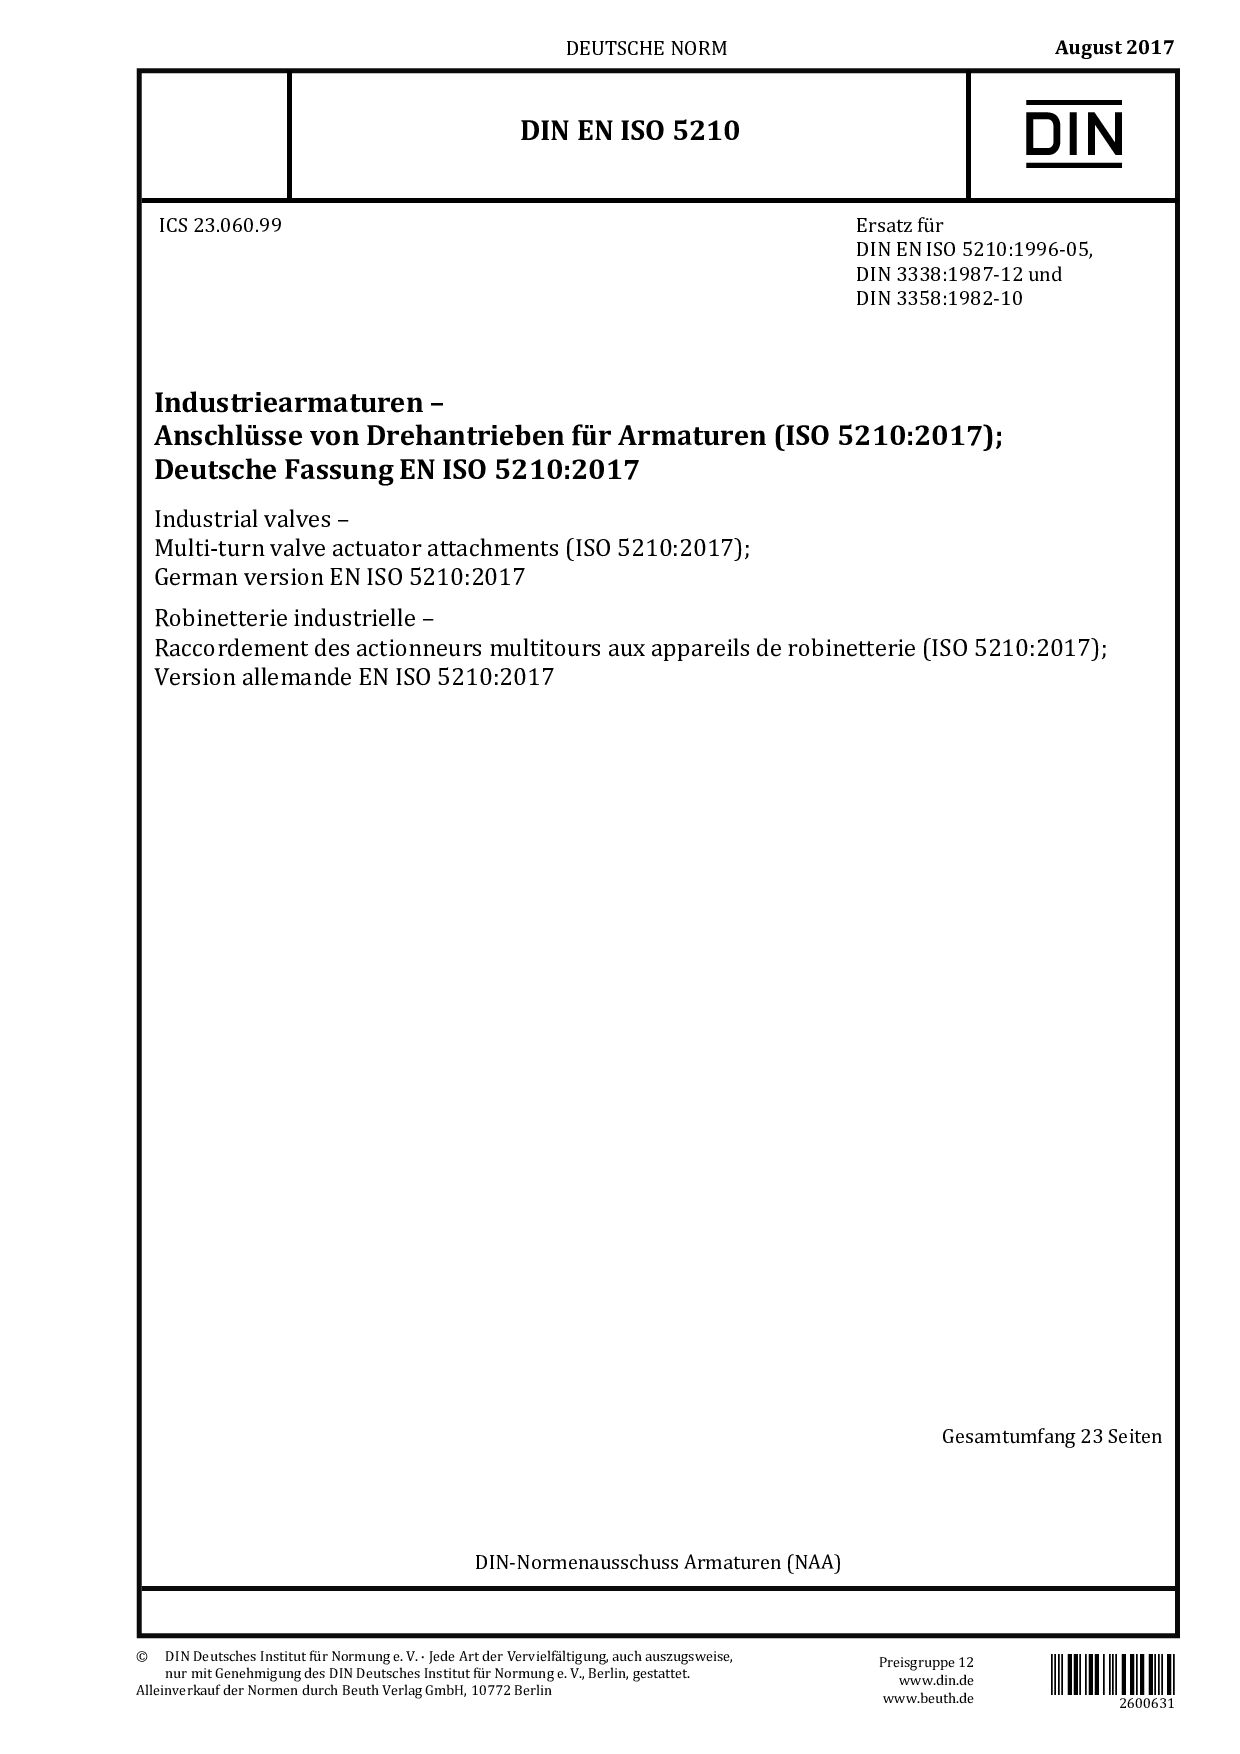 DIN EN ISO 5210:2017封面图